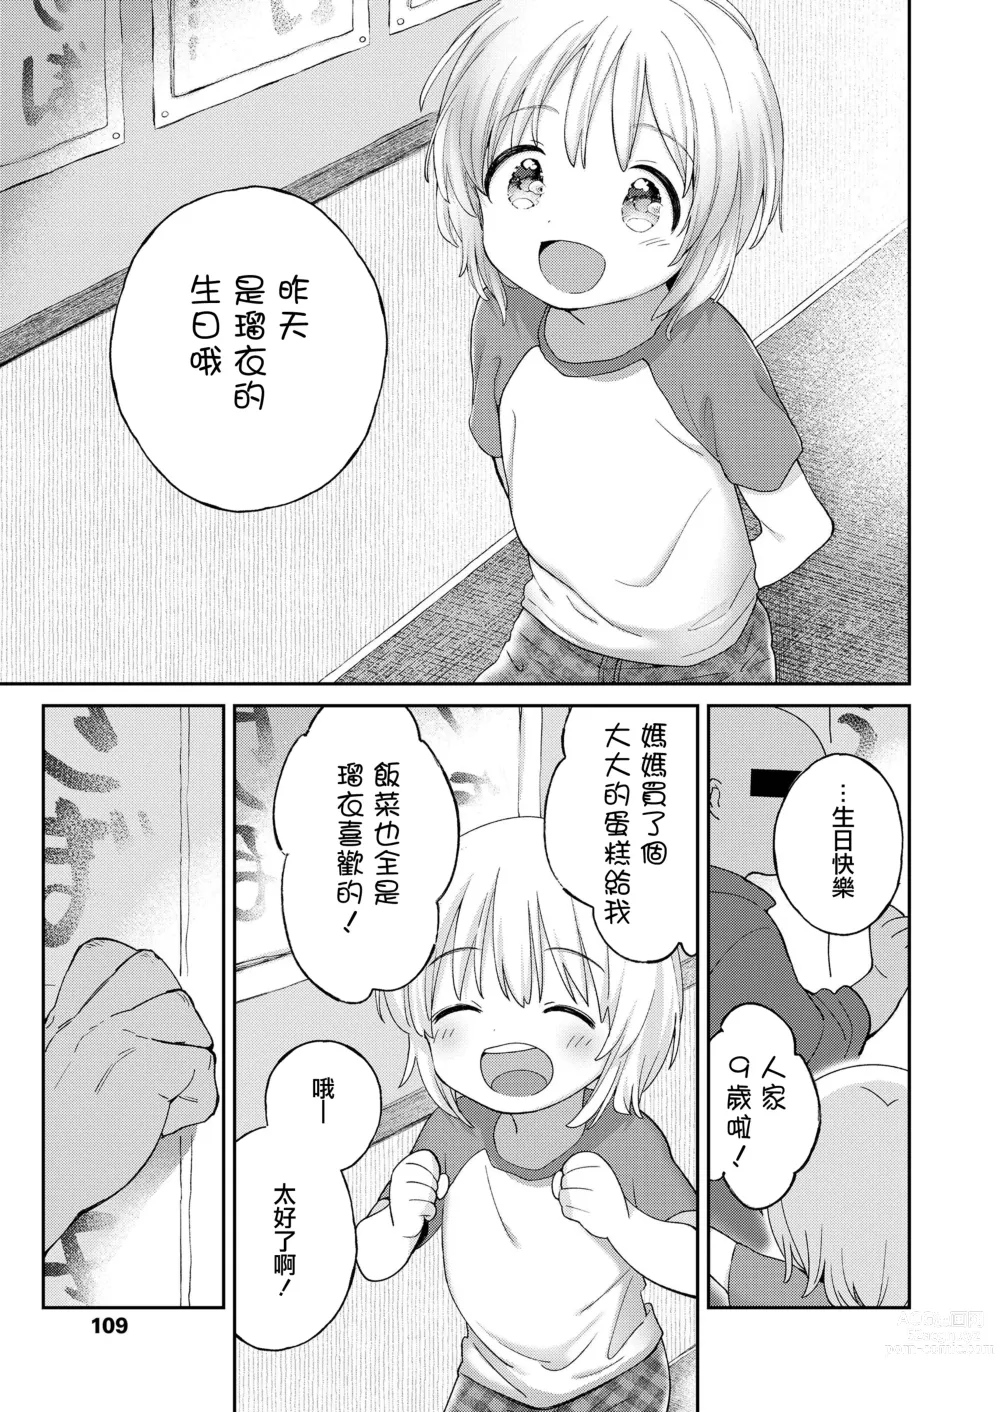 Page 11 of manga Zoku Stopwatch Bousui ¥980